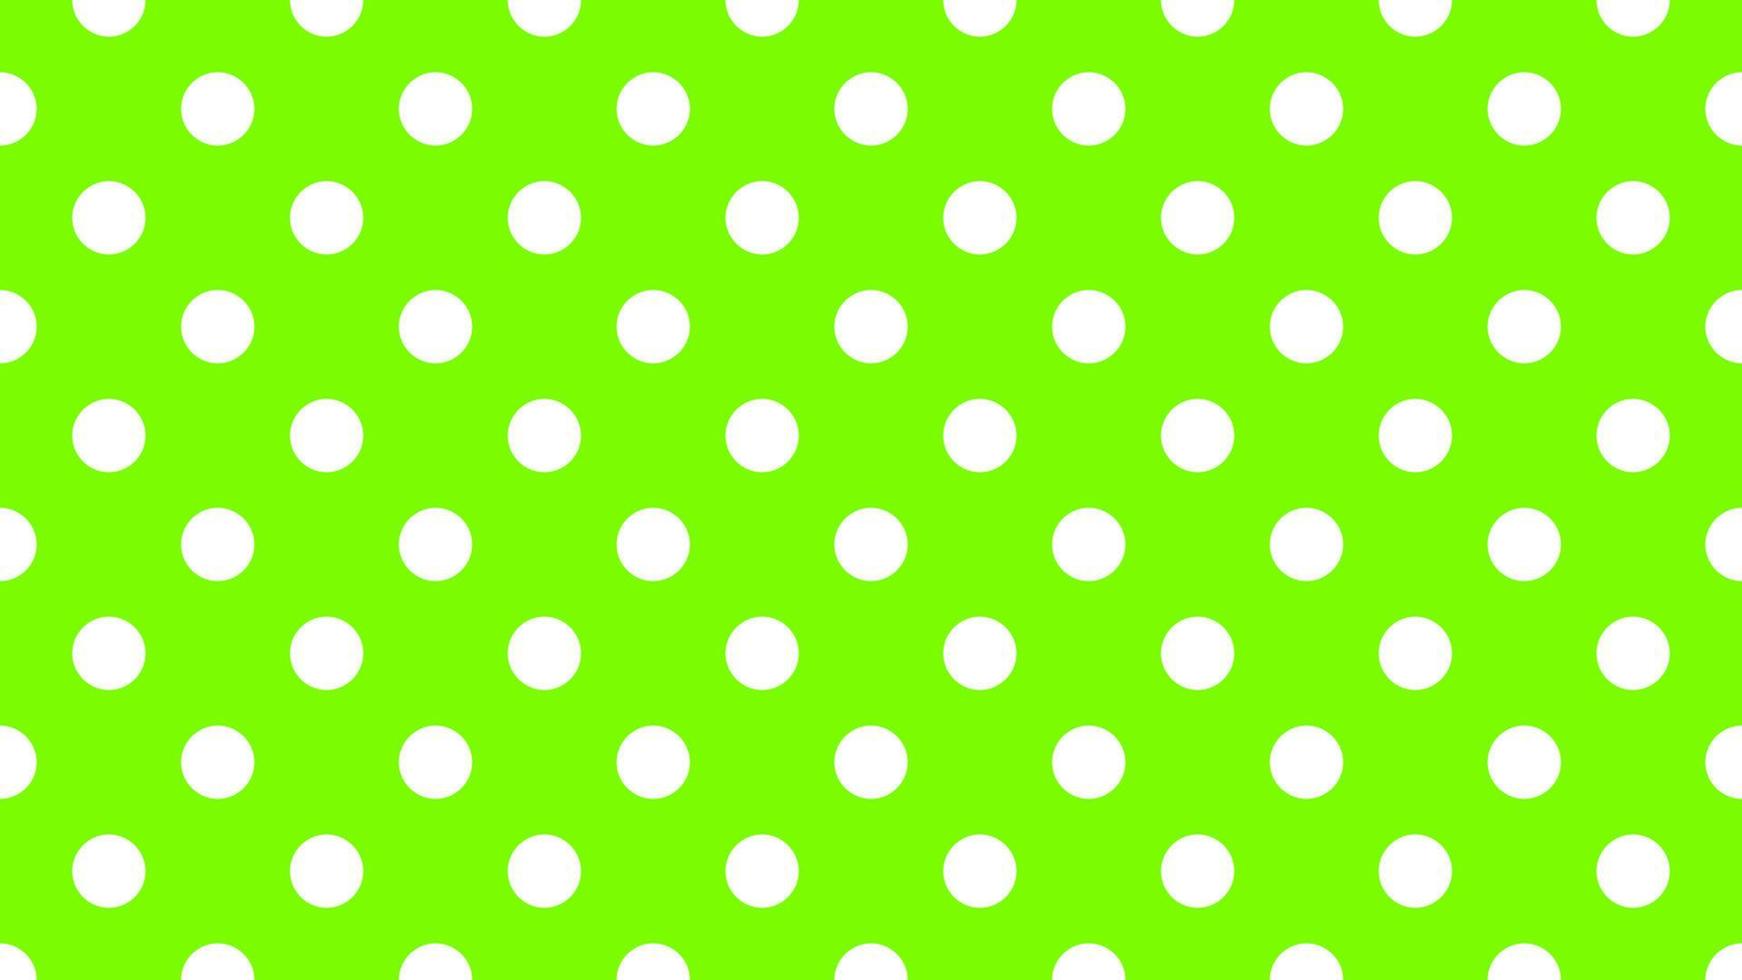 wit kleur polka dots over- gazon groen achtergrond vector